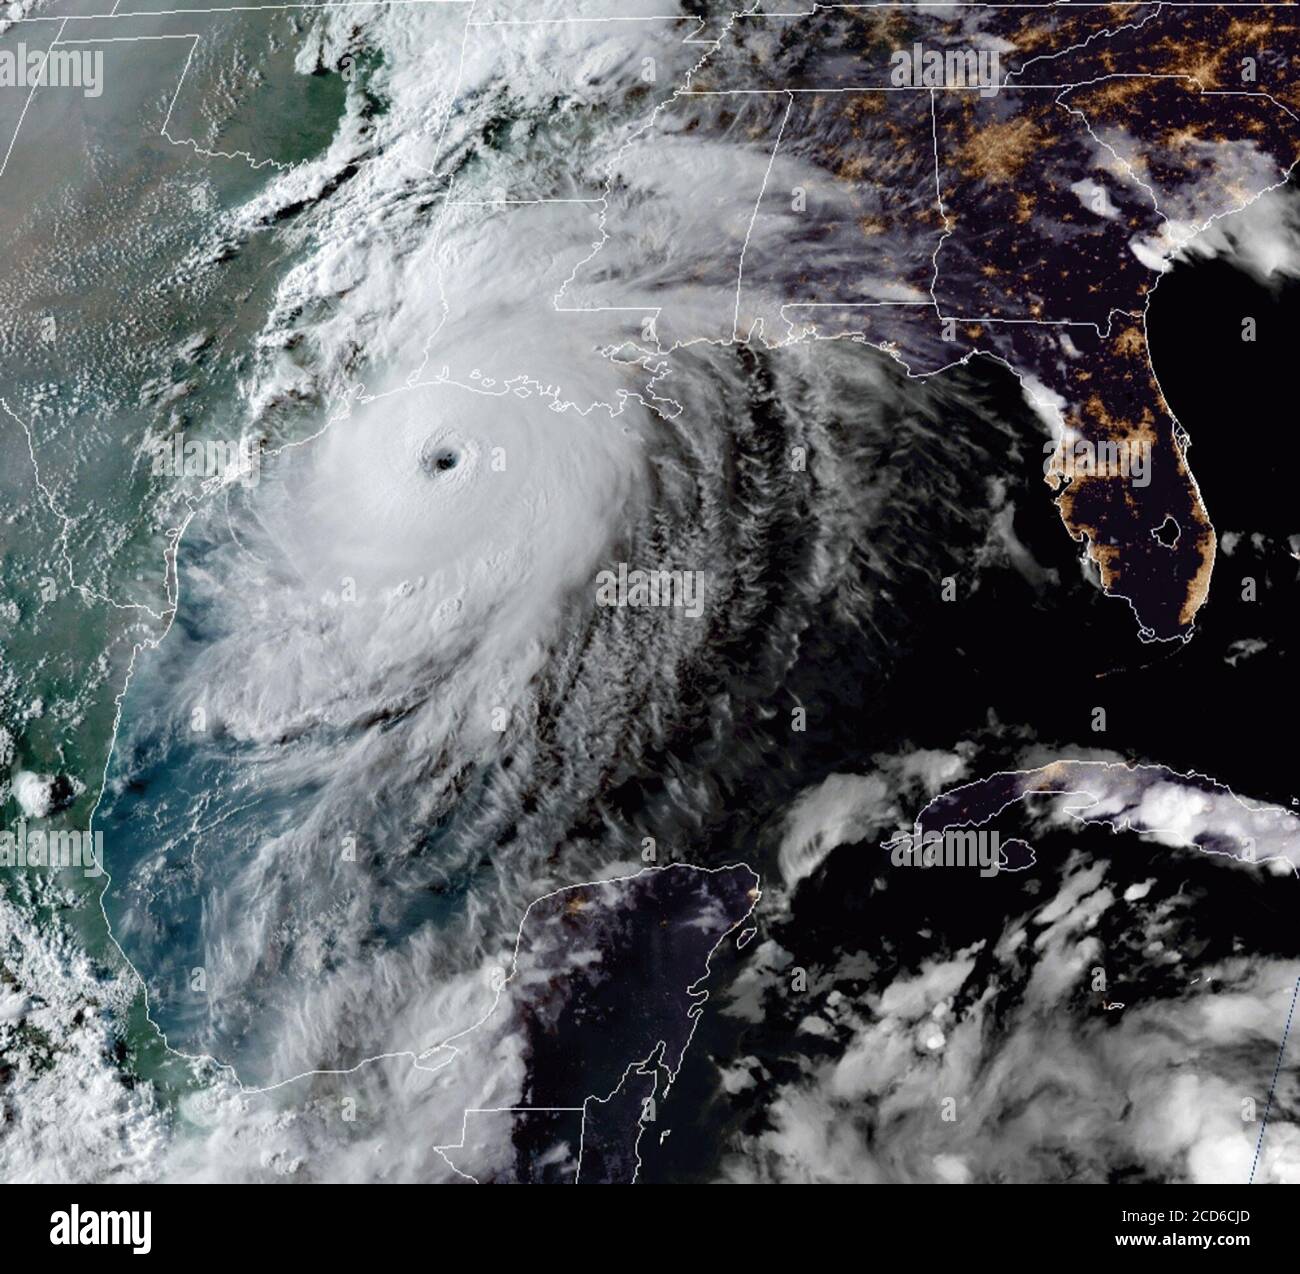 L'ouragan Laura, de catégorie 4, s'est dirigé vers les côtes du Texas et de la Louisiane alors que la soirée tombe dans le golfe du Mexique le 26 août 2020. (ÉTATS-UNIS) Banque D'Images